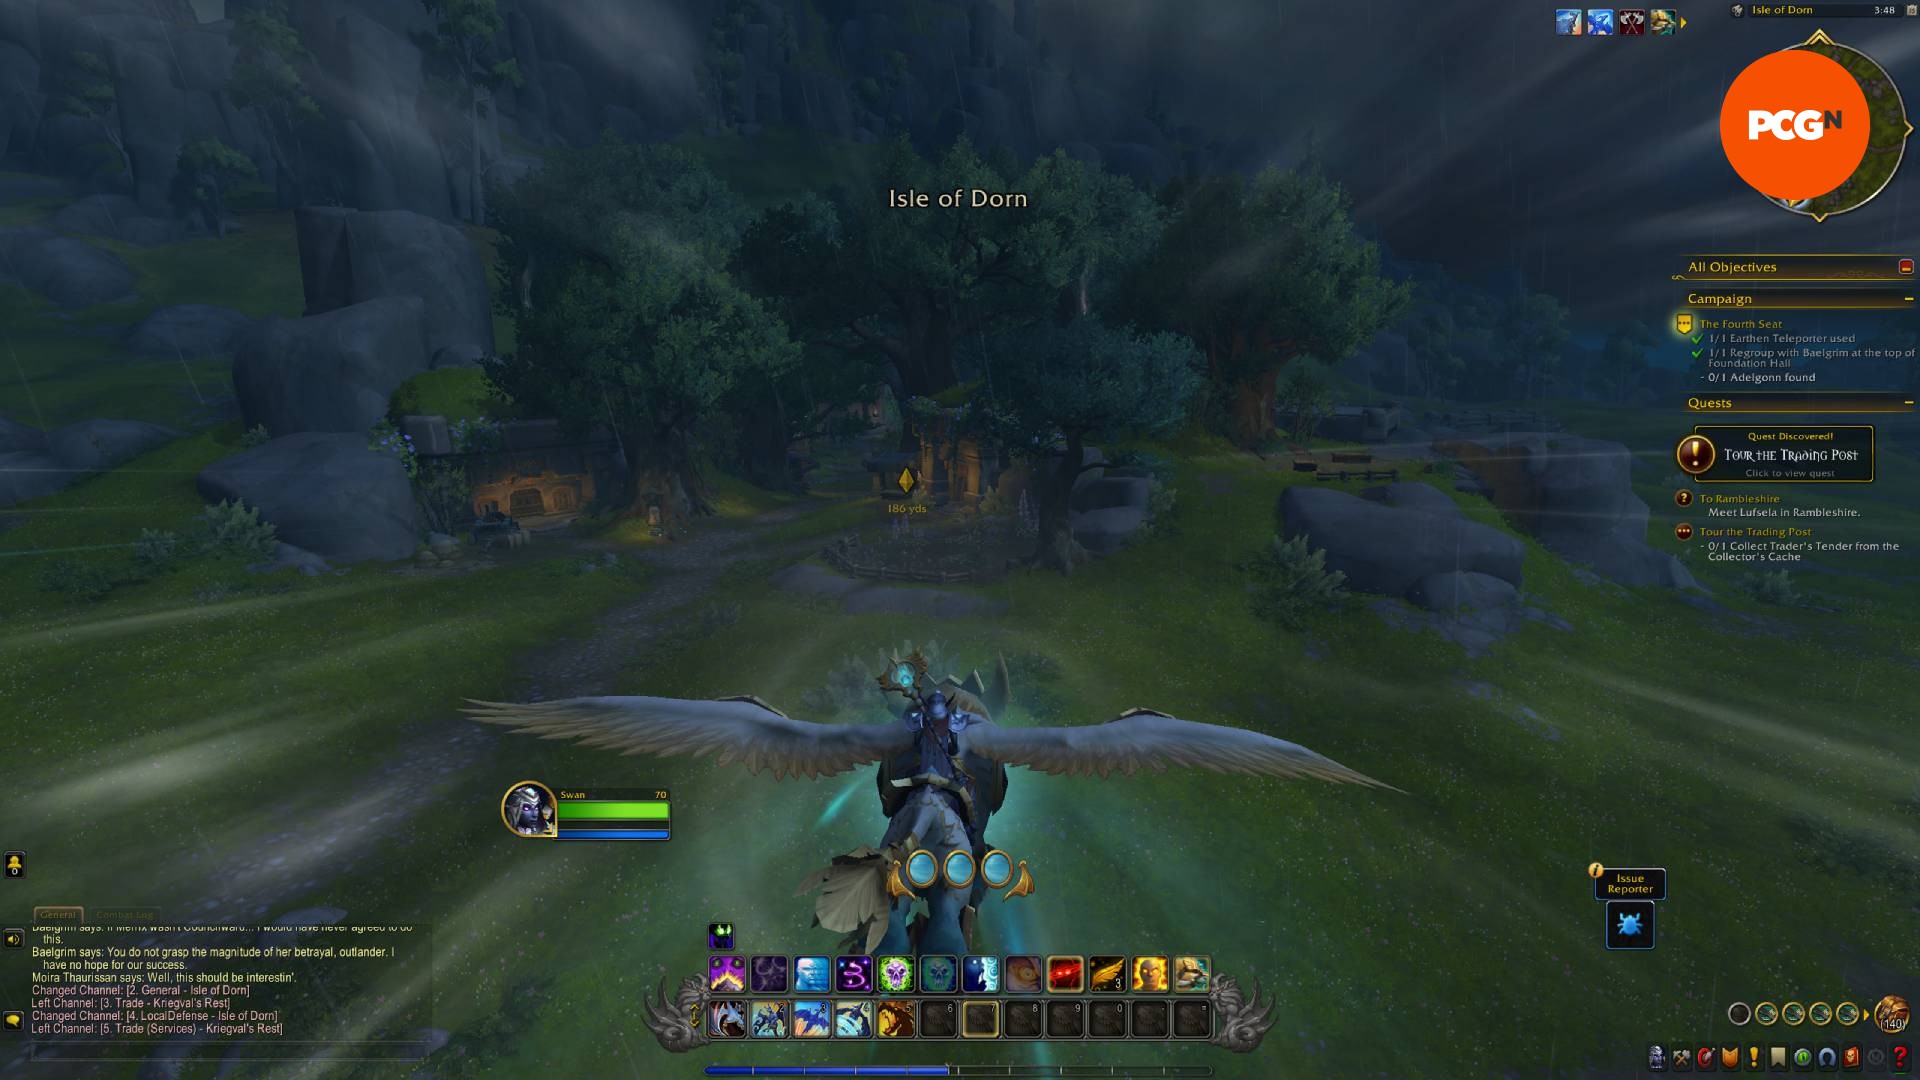 Orman alanında bir grifonun üzerinde uçan bir World of Warcraft karakteri